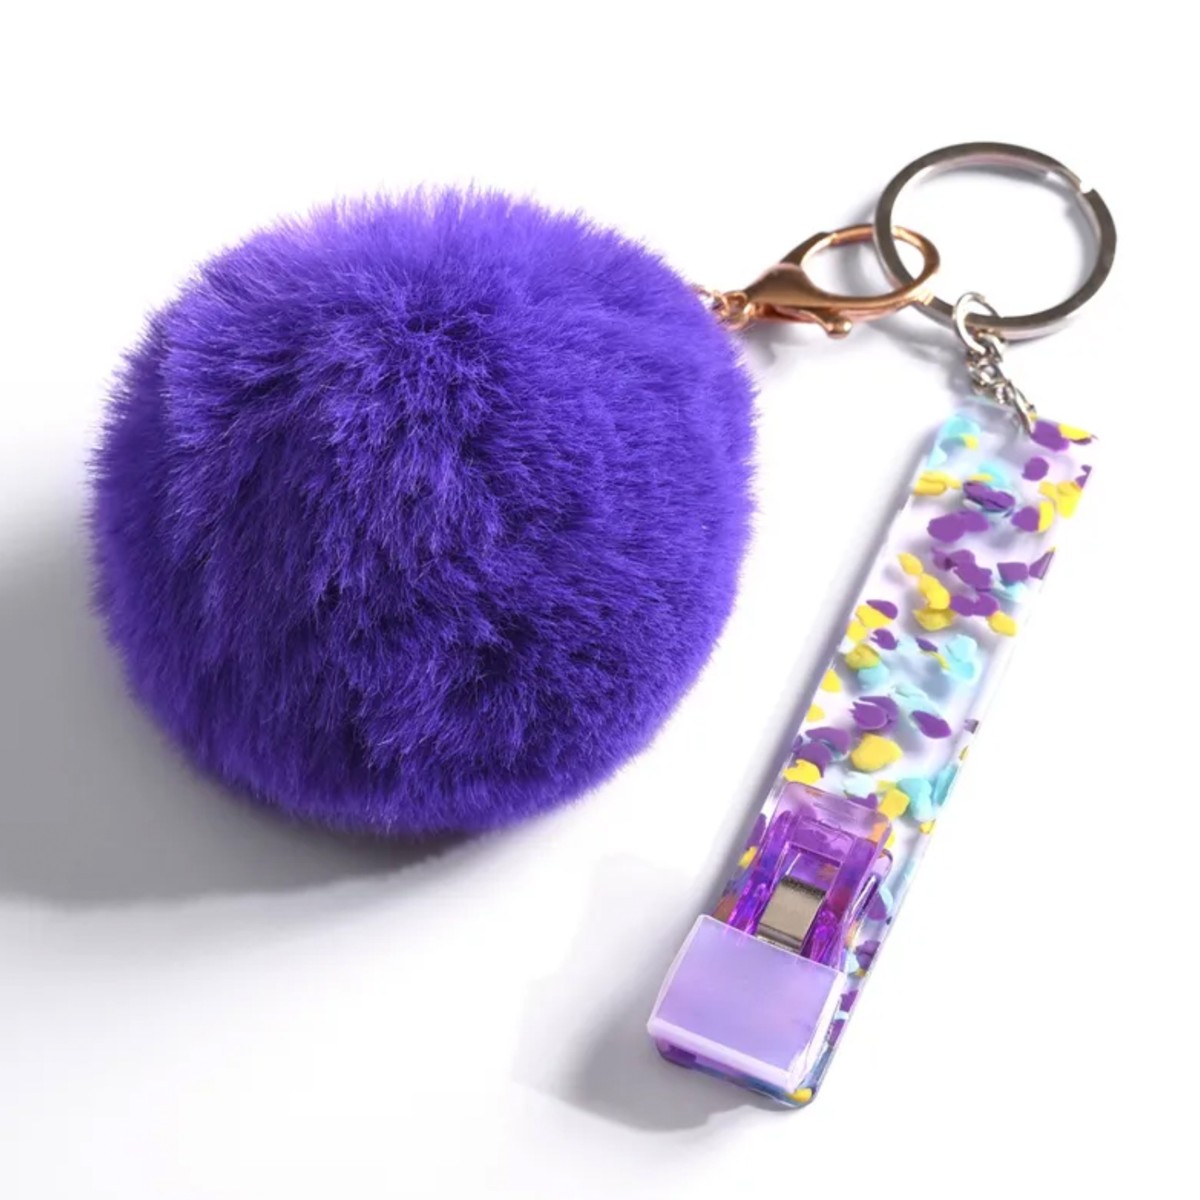 Schlüsselanhänger mit Card Grabber und Pom Pom Ball